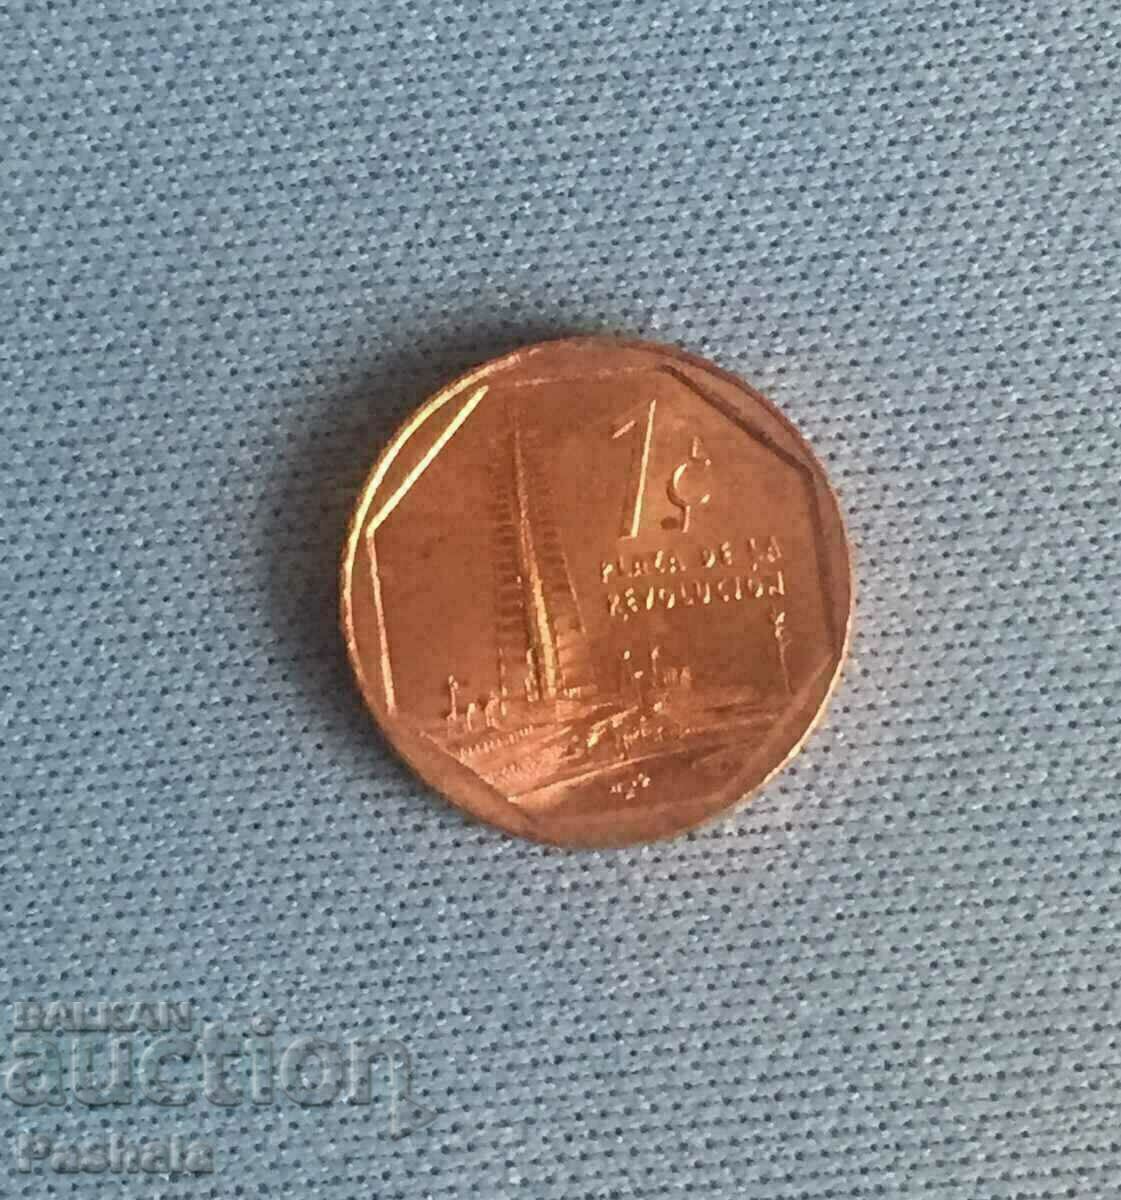 Cuba 1 centavo 2017